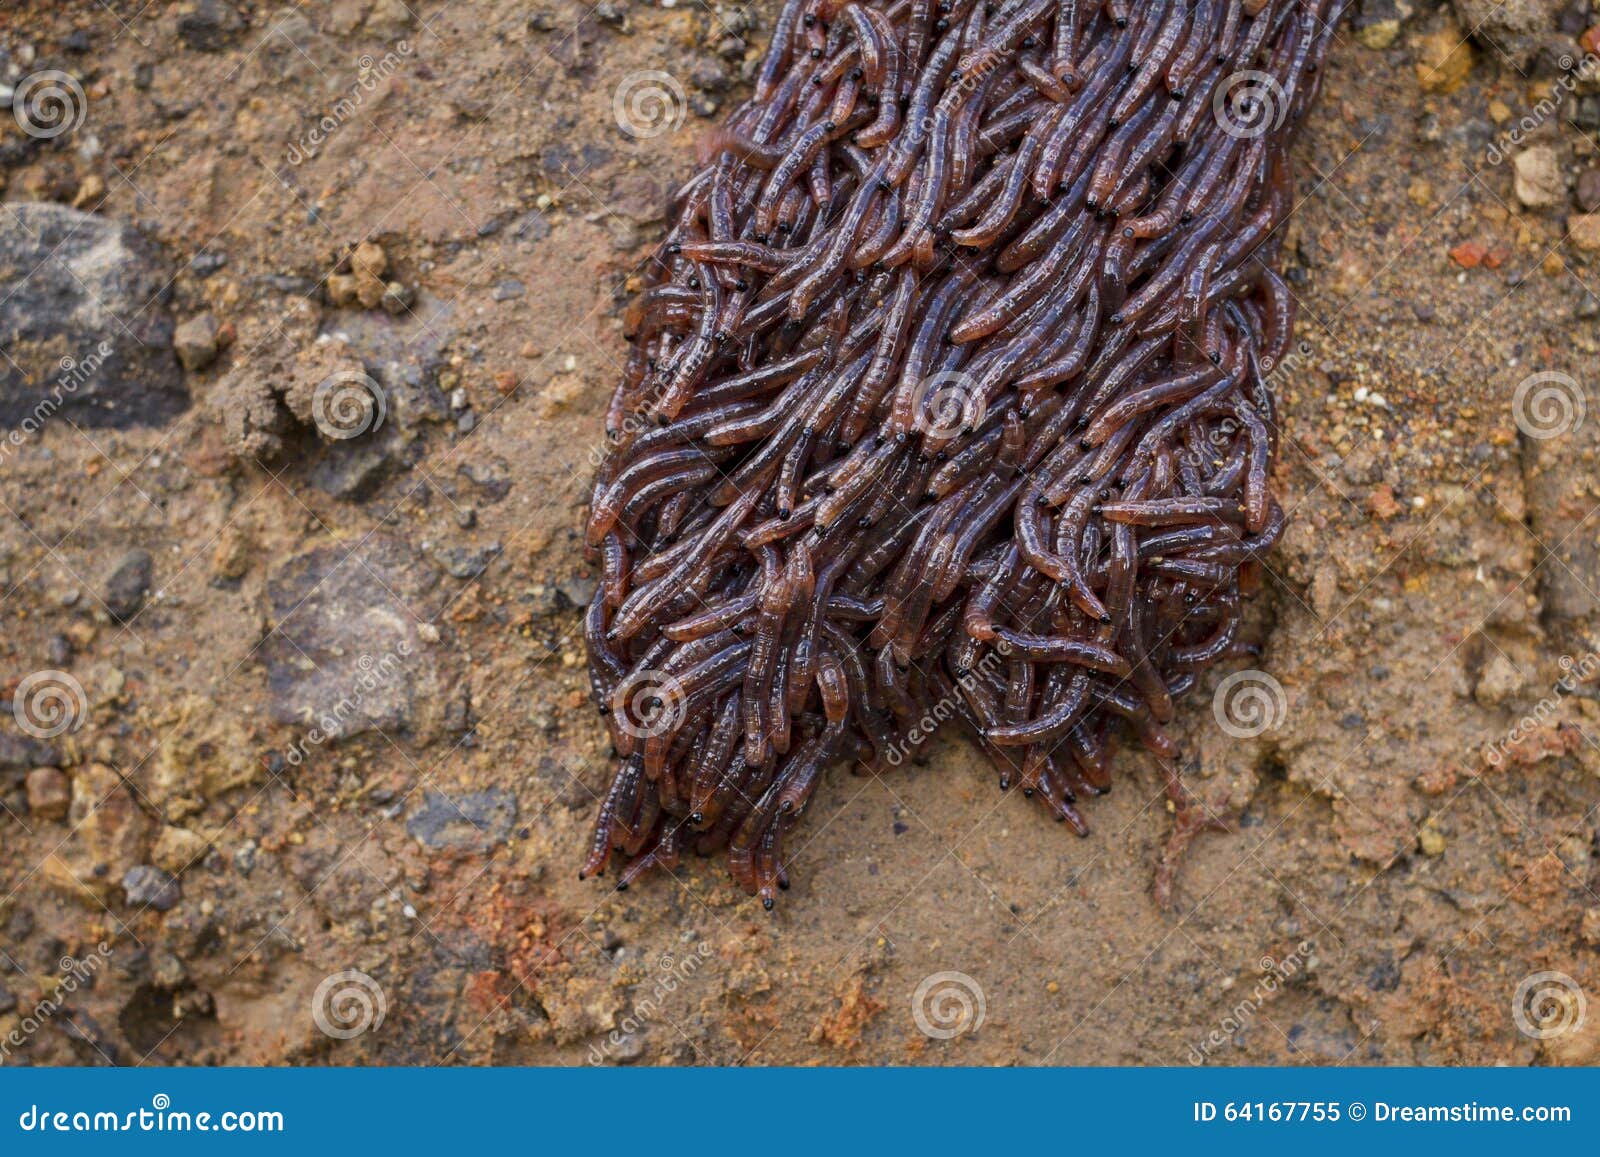 Много червей среди которых. Черви ползут по земле. Кучки от дождевых червей.